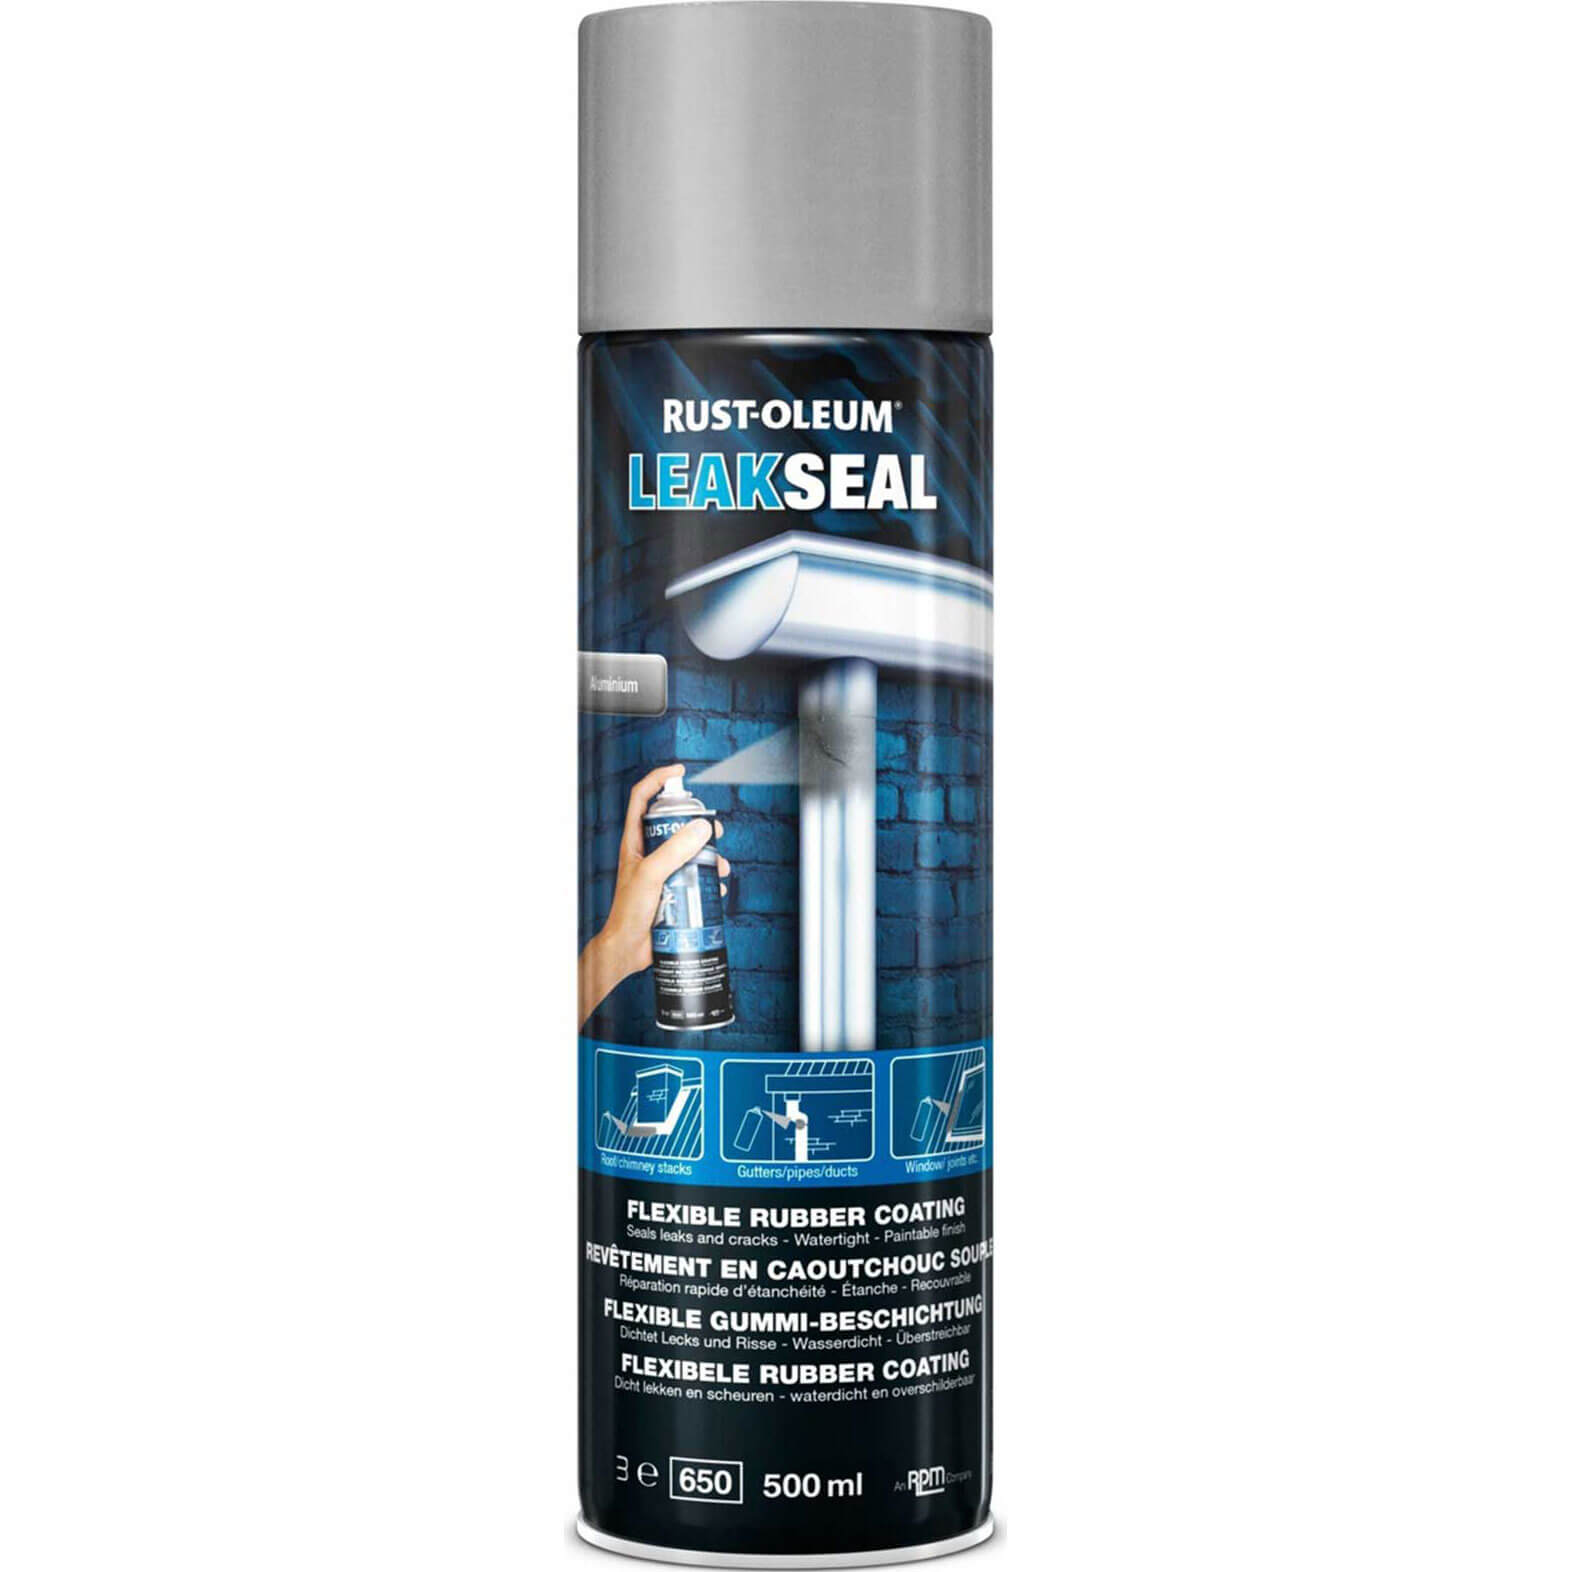 Image of Rust Oleum Leak Seal Spray Paint Aluminium 500ml